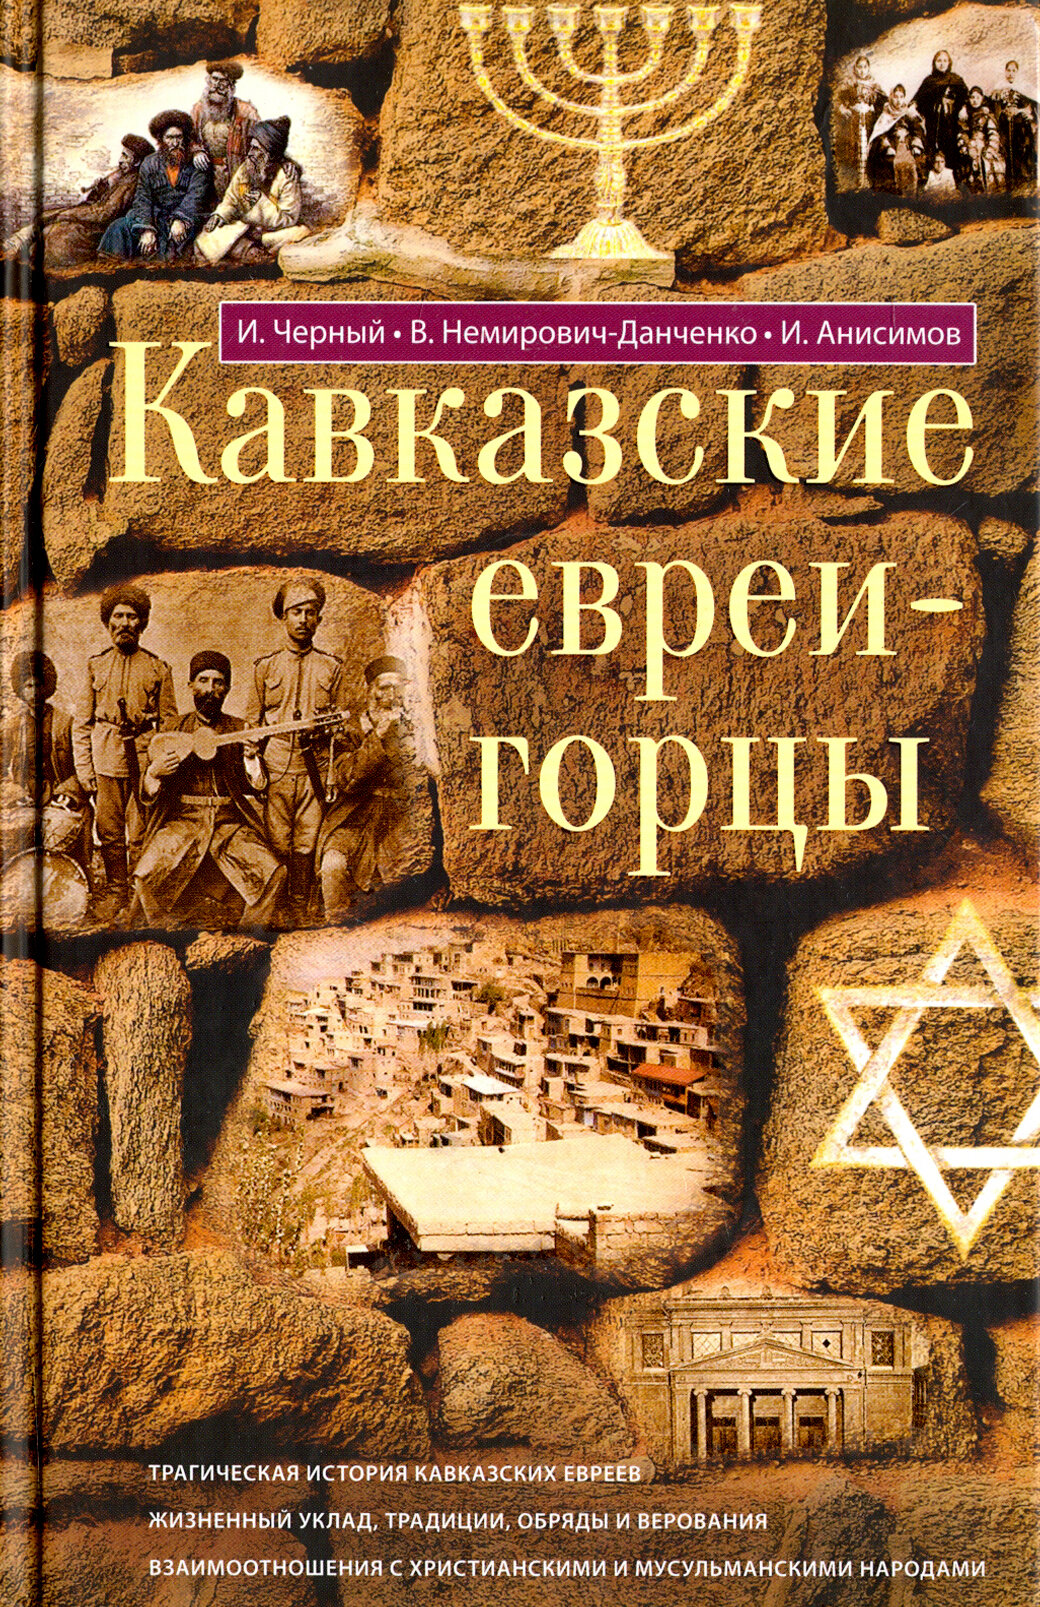 Кавказские евреи-горцы. Сборник - фото №3